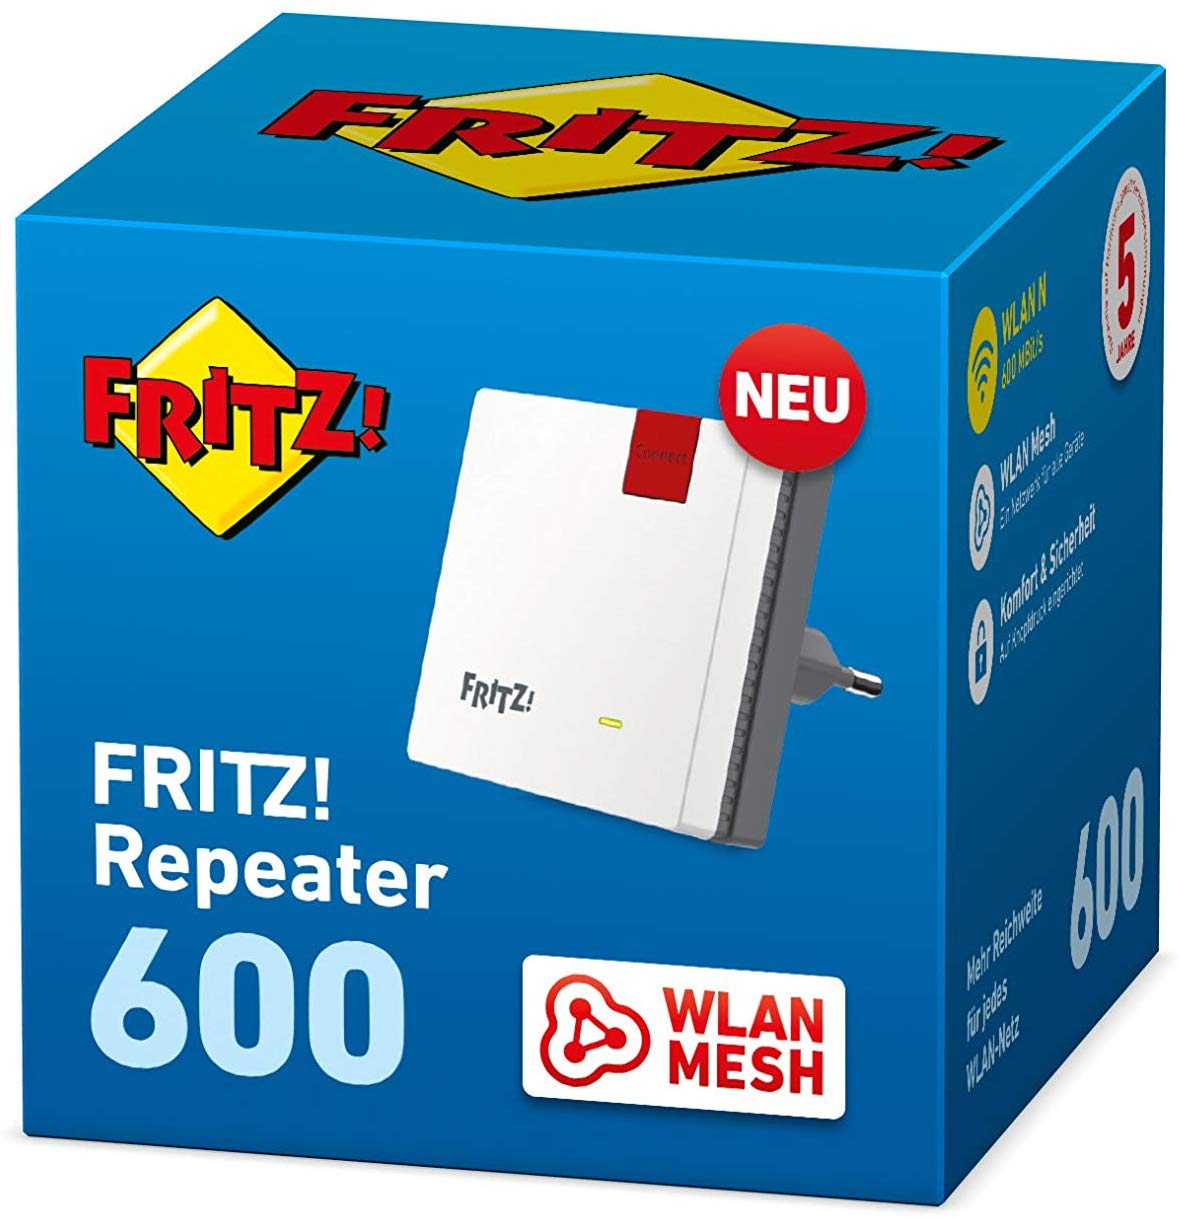 AVM FRITZ!WLAN Mesh Repeater 600